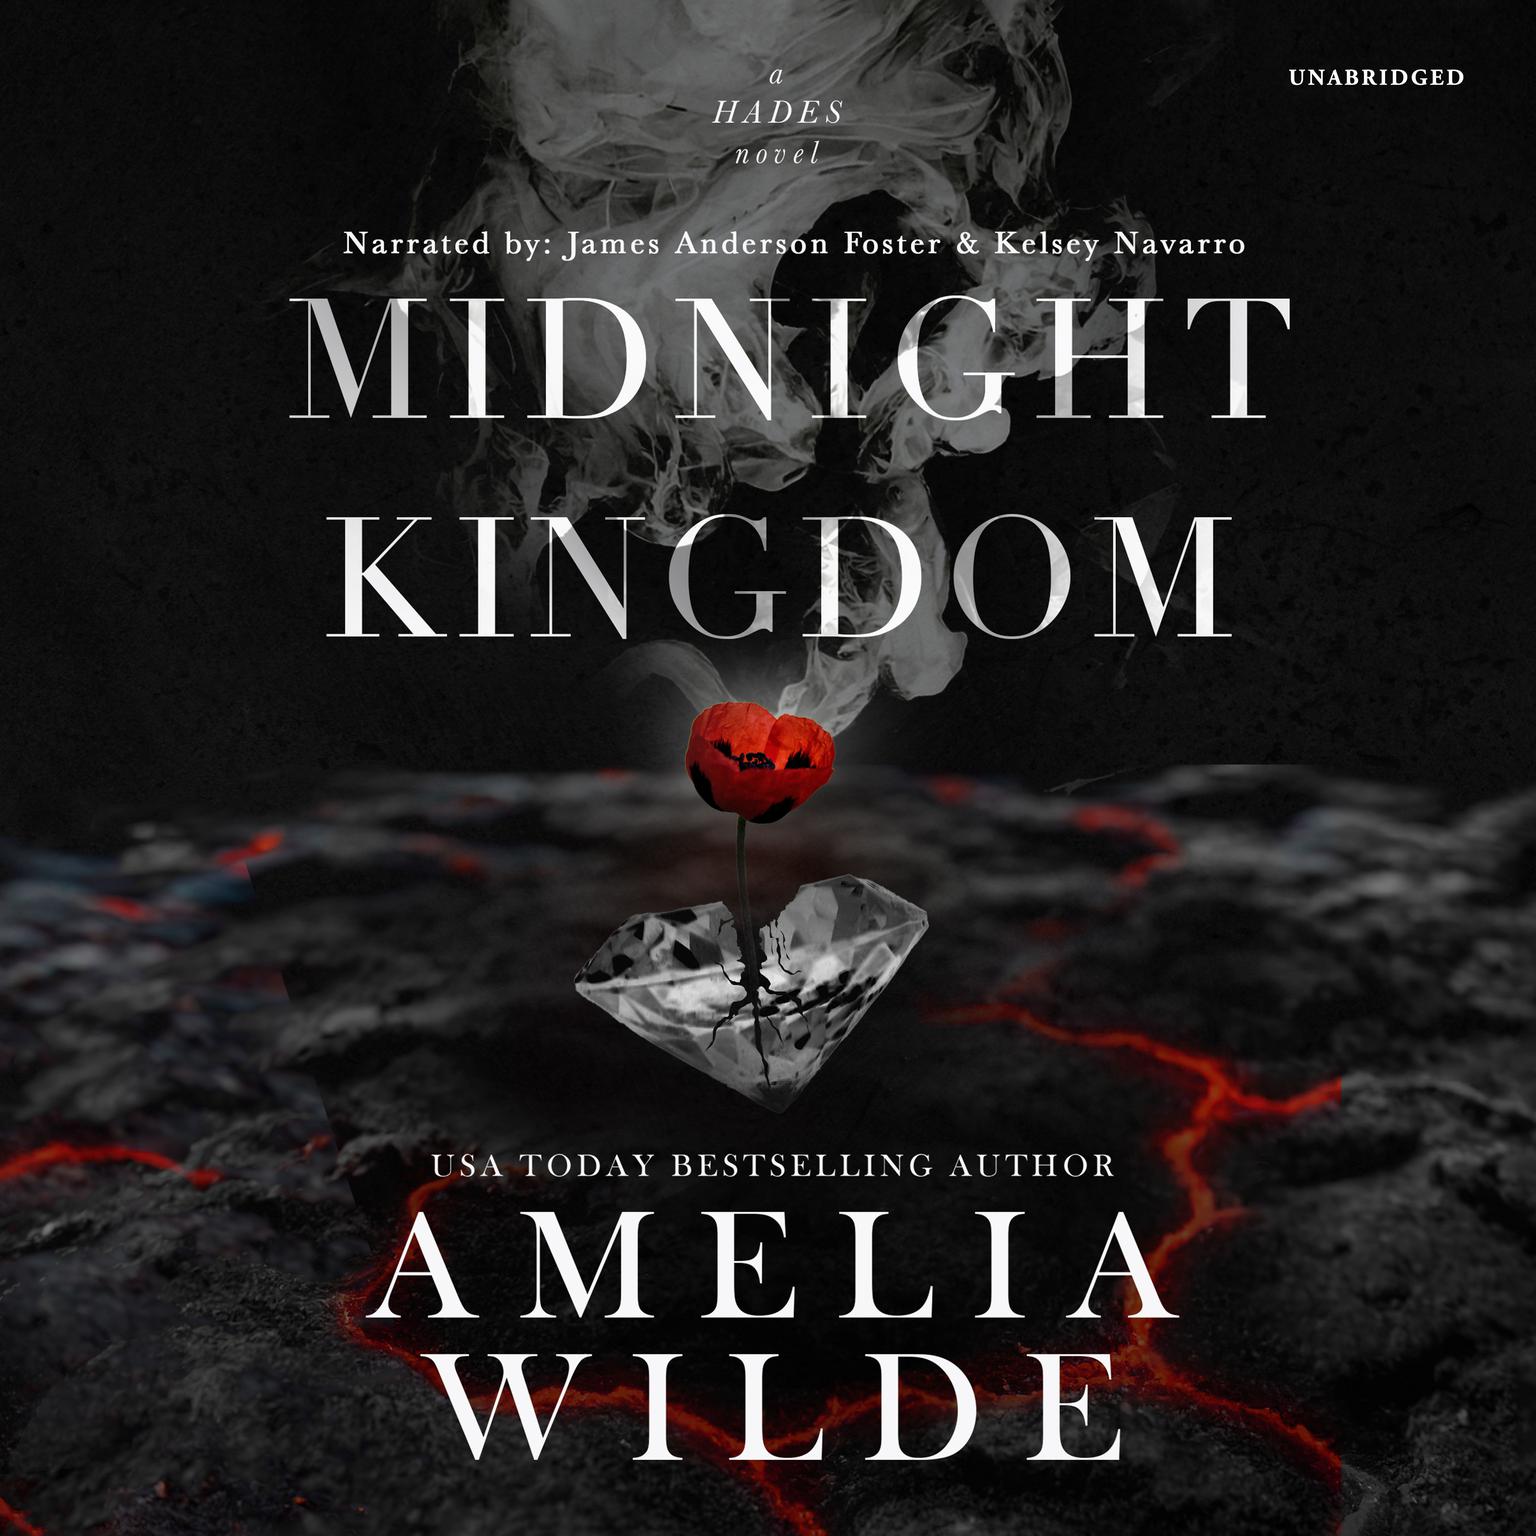 Midnight Kingdom Audiobook, by Amelia Wilde